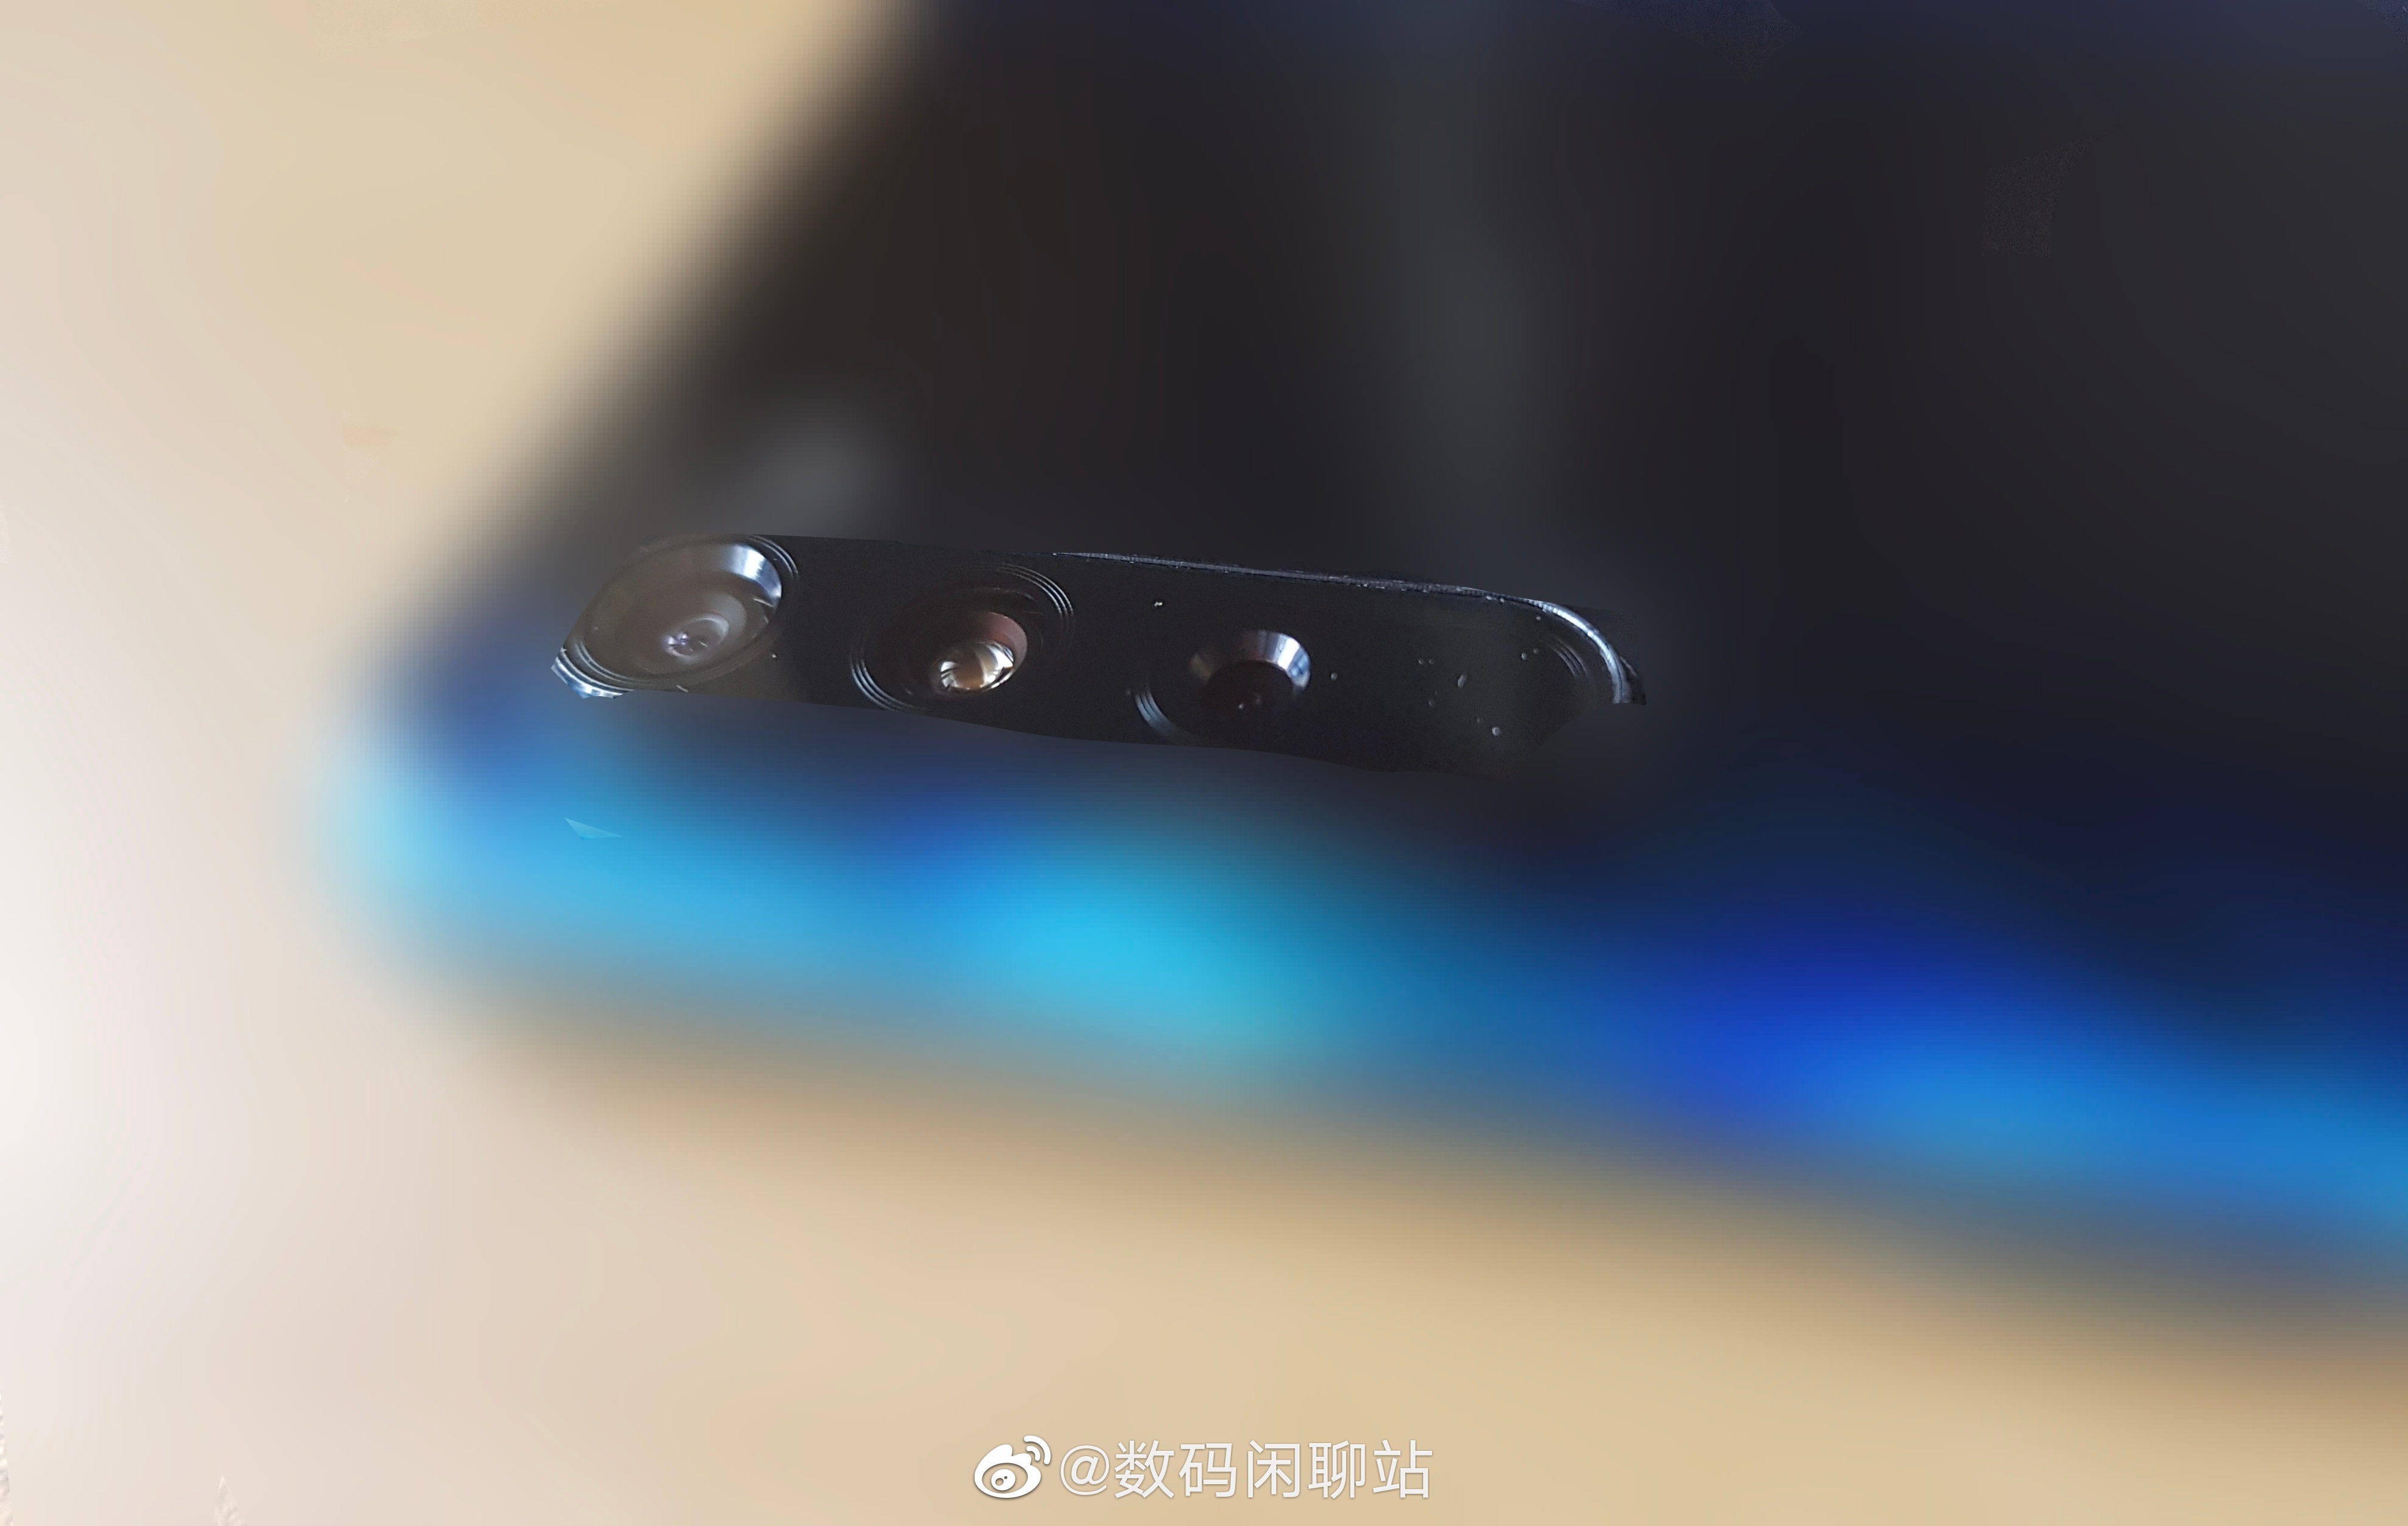 Xiaomi Mi 10 Pro AnTuTu smartfony 2020 kiedy premiera plotki przecieki wycieki specyfikacja dane techniczne